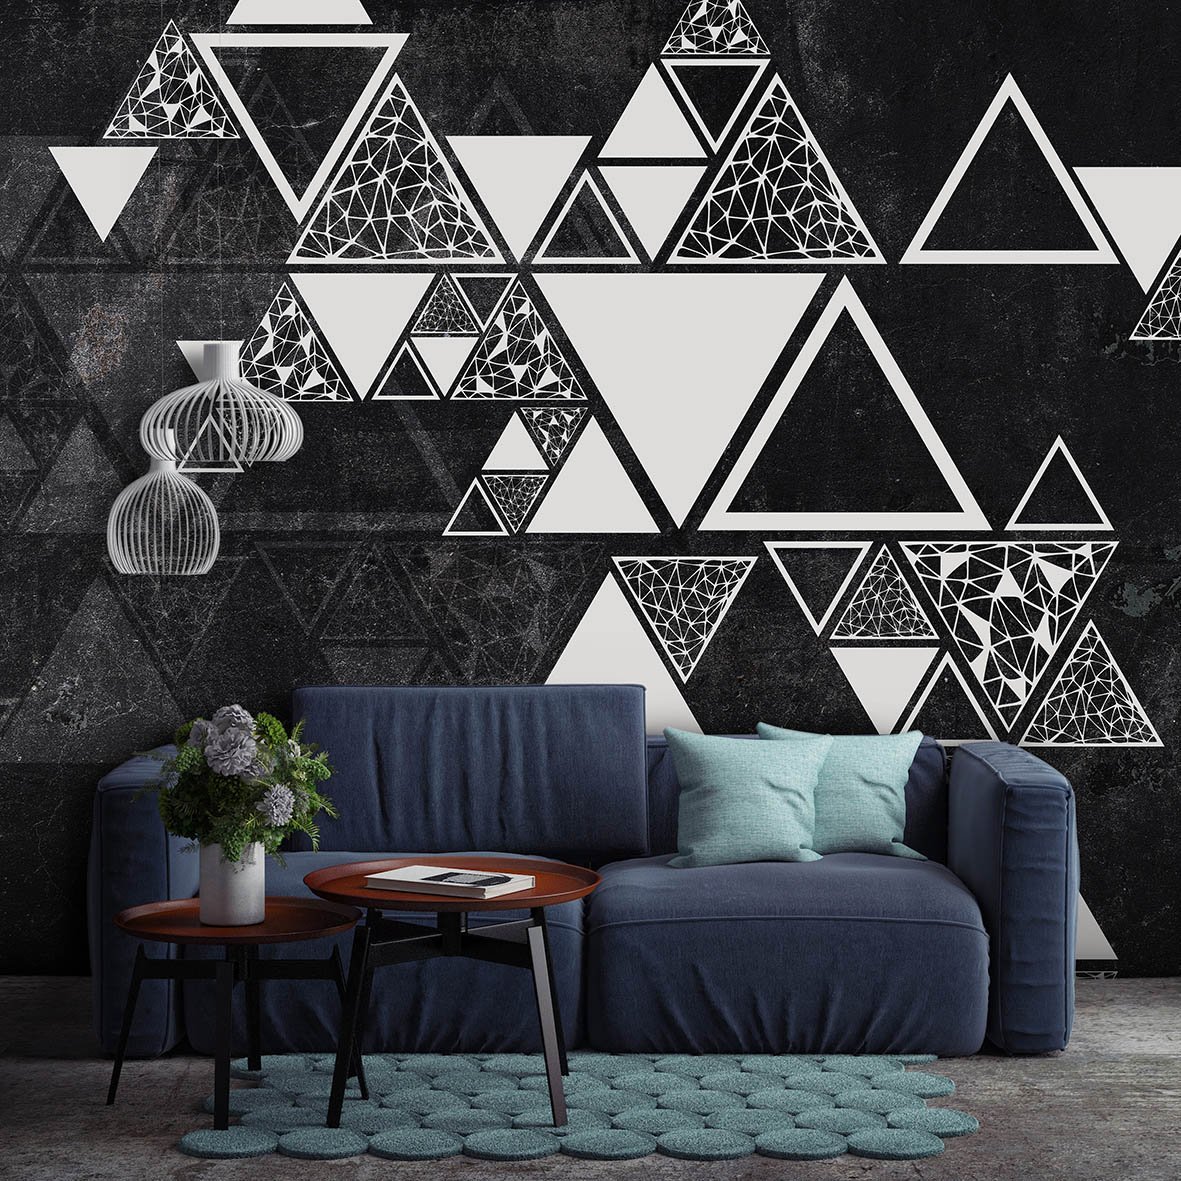 Нестандартная геометрия. Геометрические фигуры на стене. Геометрический стиль в интерьере. Треугольники в интерьере. Геометрический узор на стене.